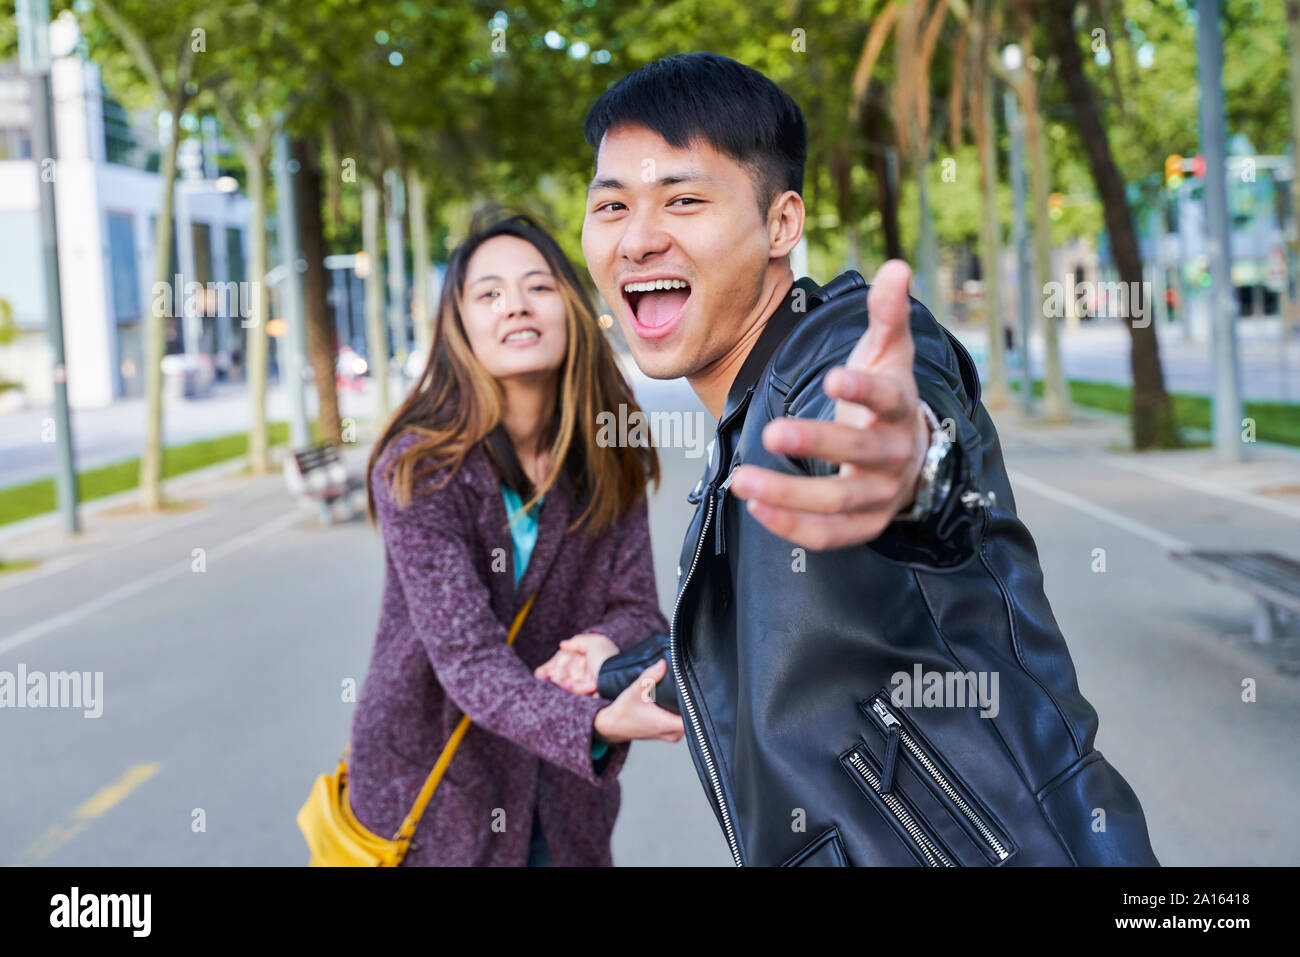 Feliz pareja invitar a alguien a unirse a ellos para una caminata, Barcelona, España Foto de stock